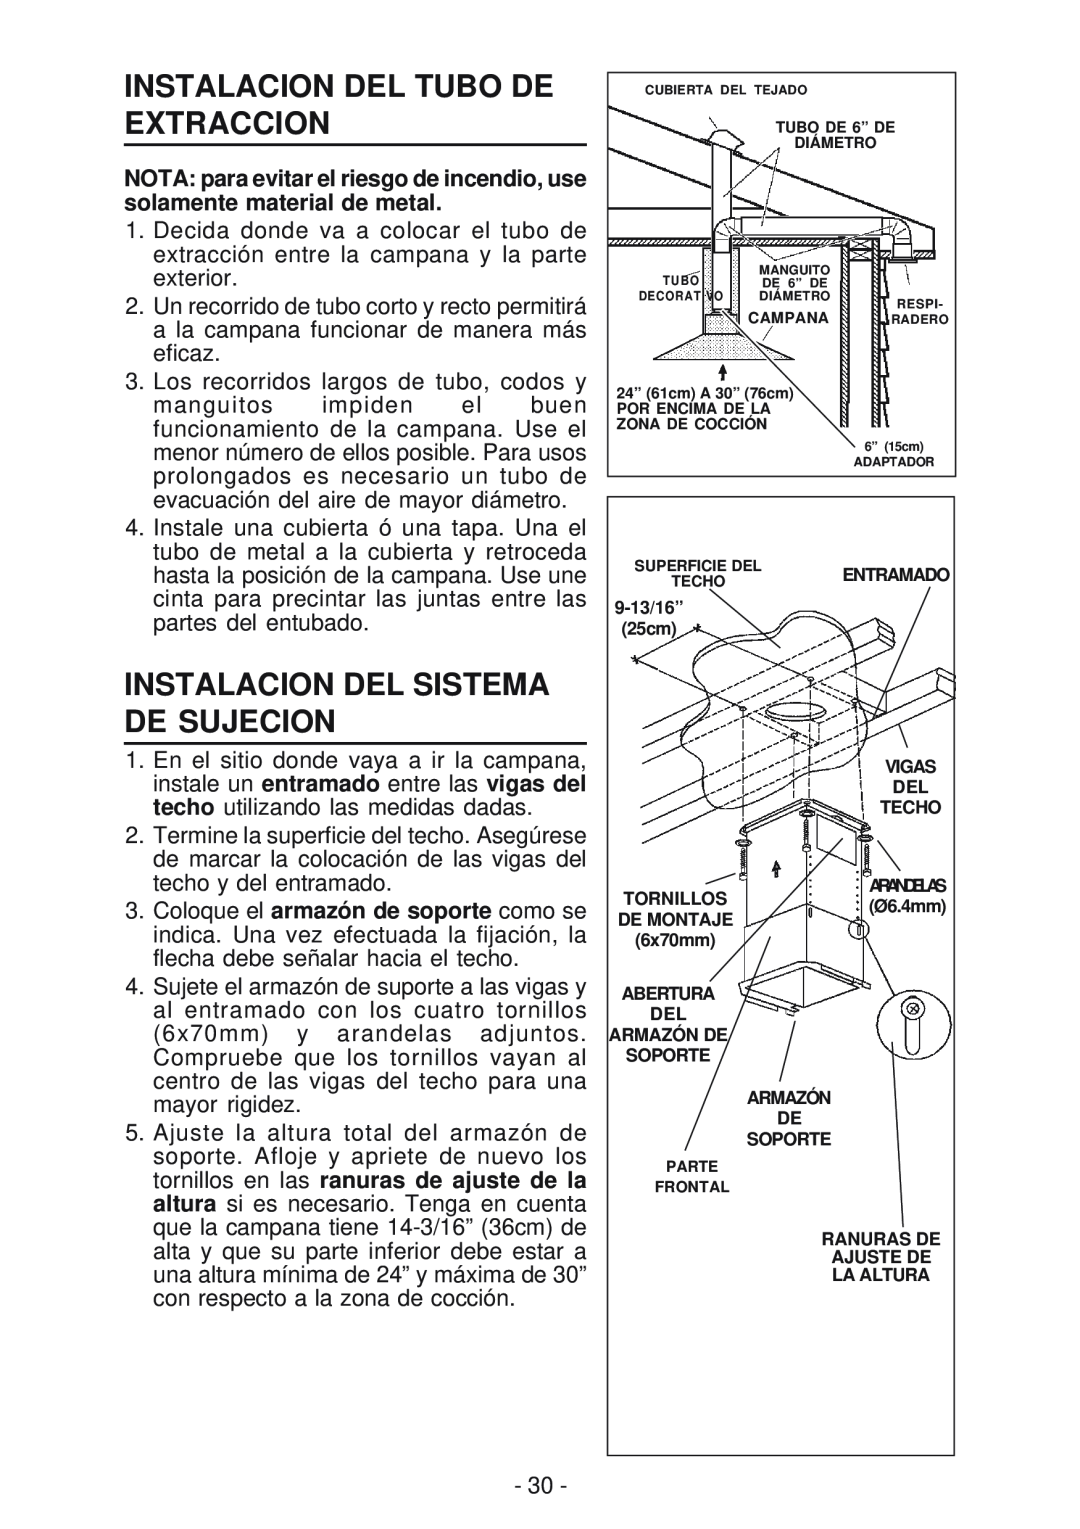 Best IS170 manual Instalacion Del Tubo De Extraccion, Instalacion Del Sistema De Sujecion 